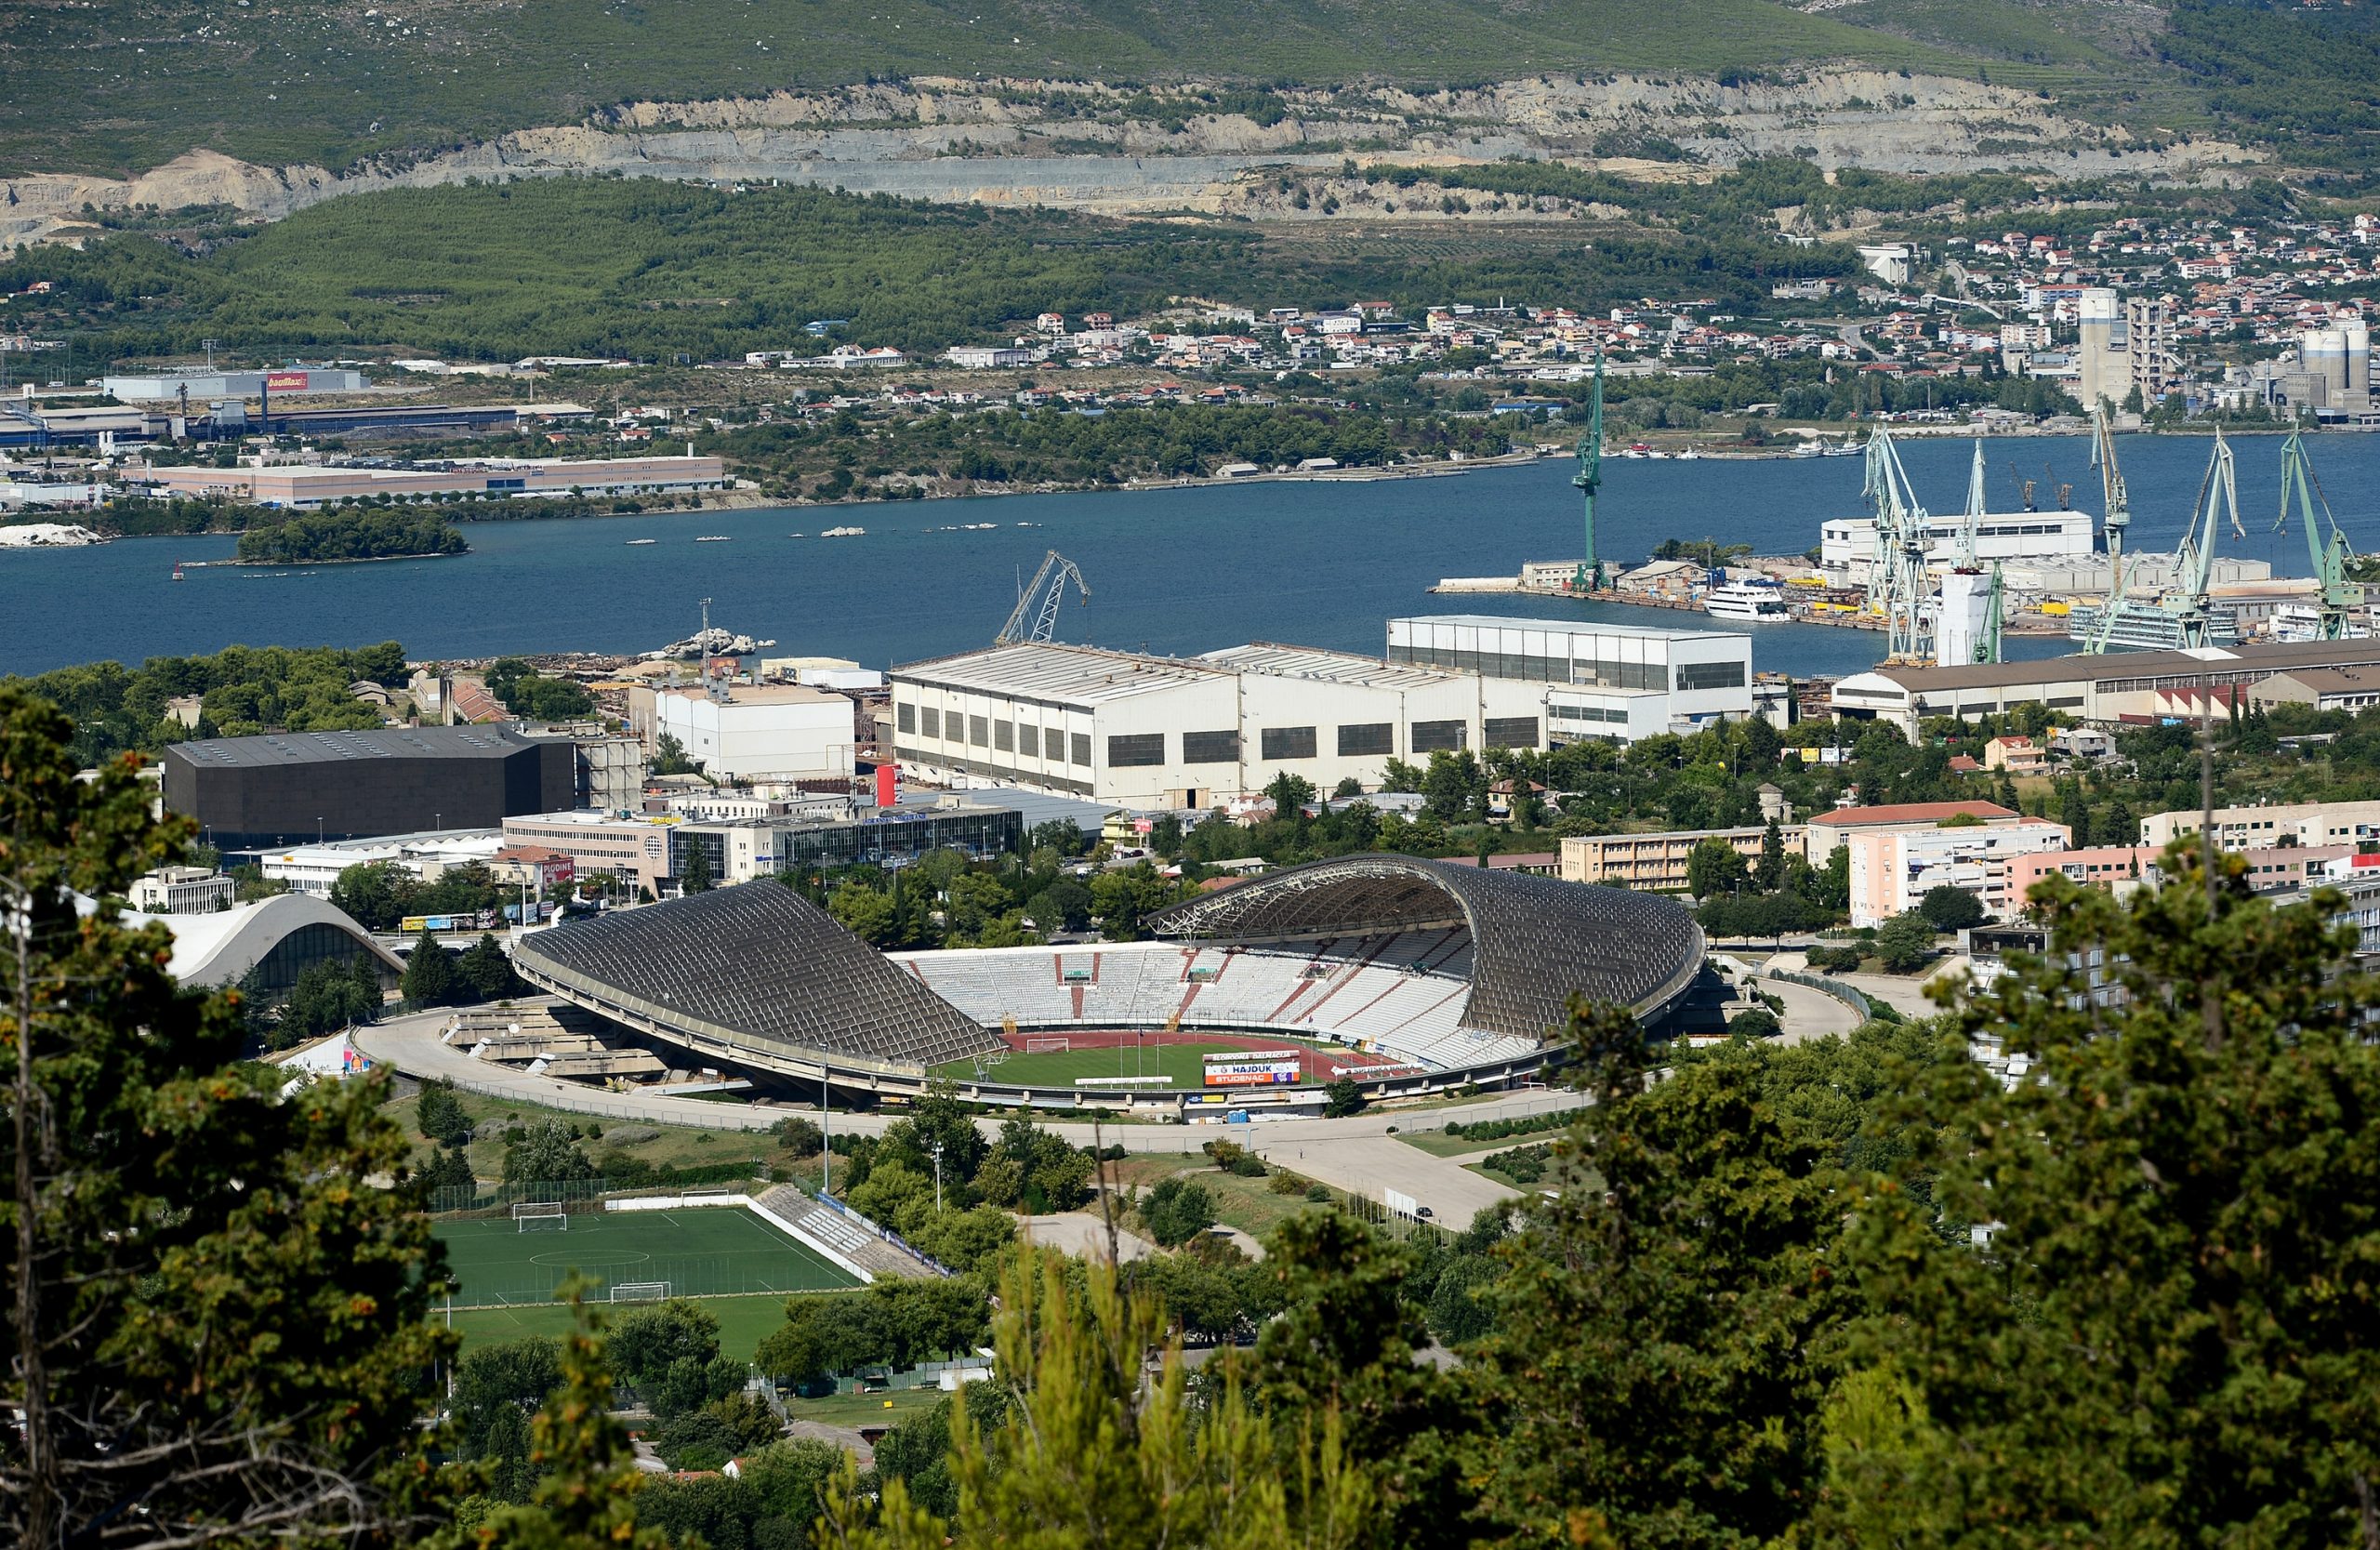 20.08.2015., Split - Pogled s Marjana na stadion Poljud. 
Photo: Marko Prpic/PIXSELL